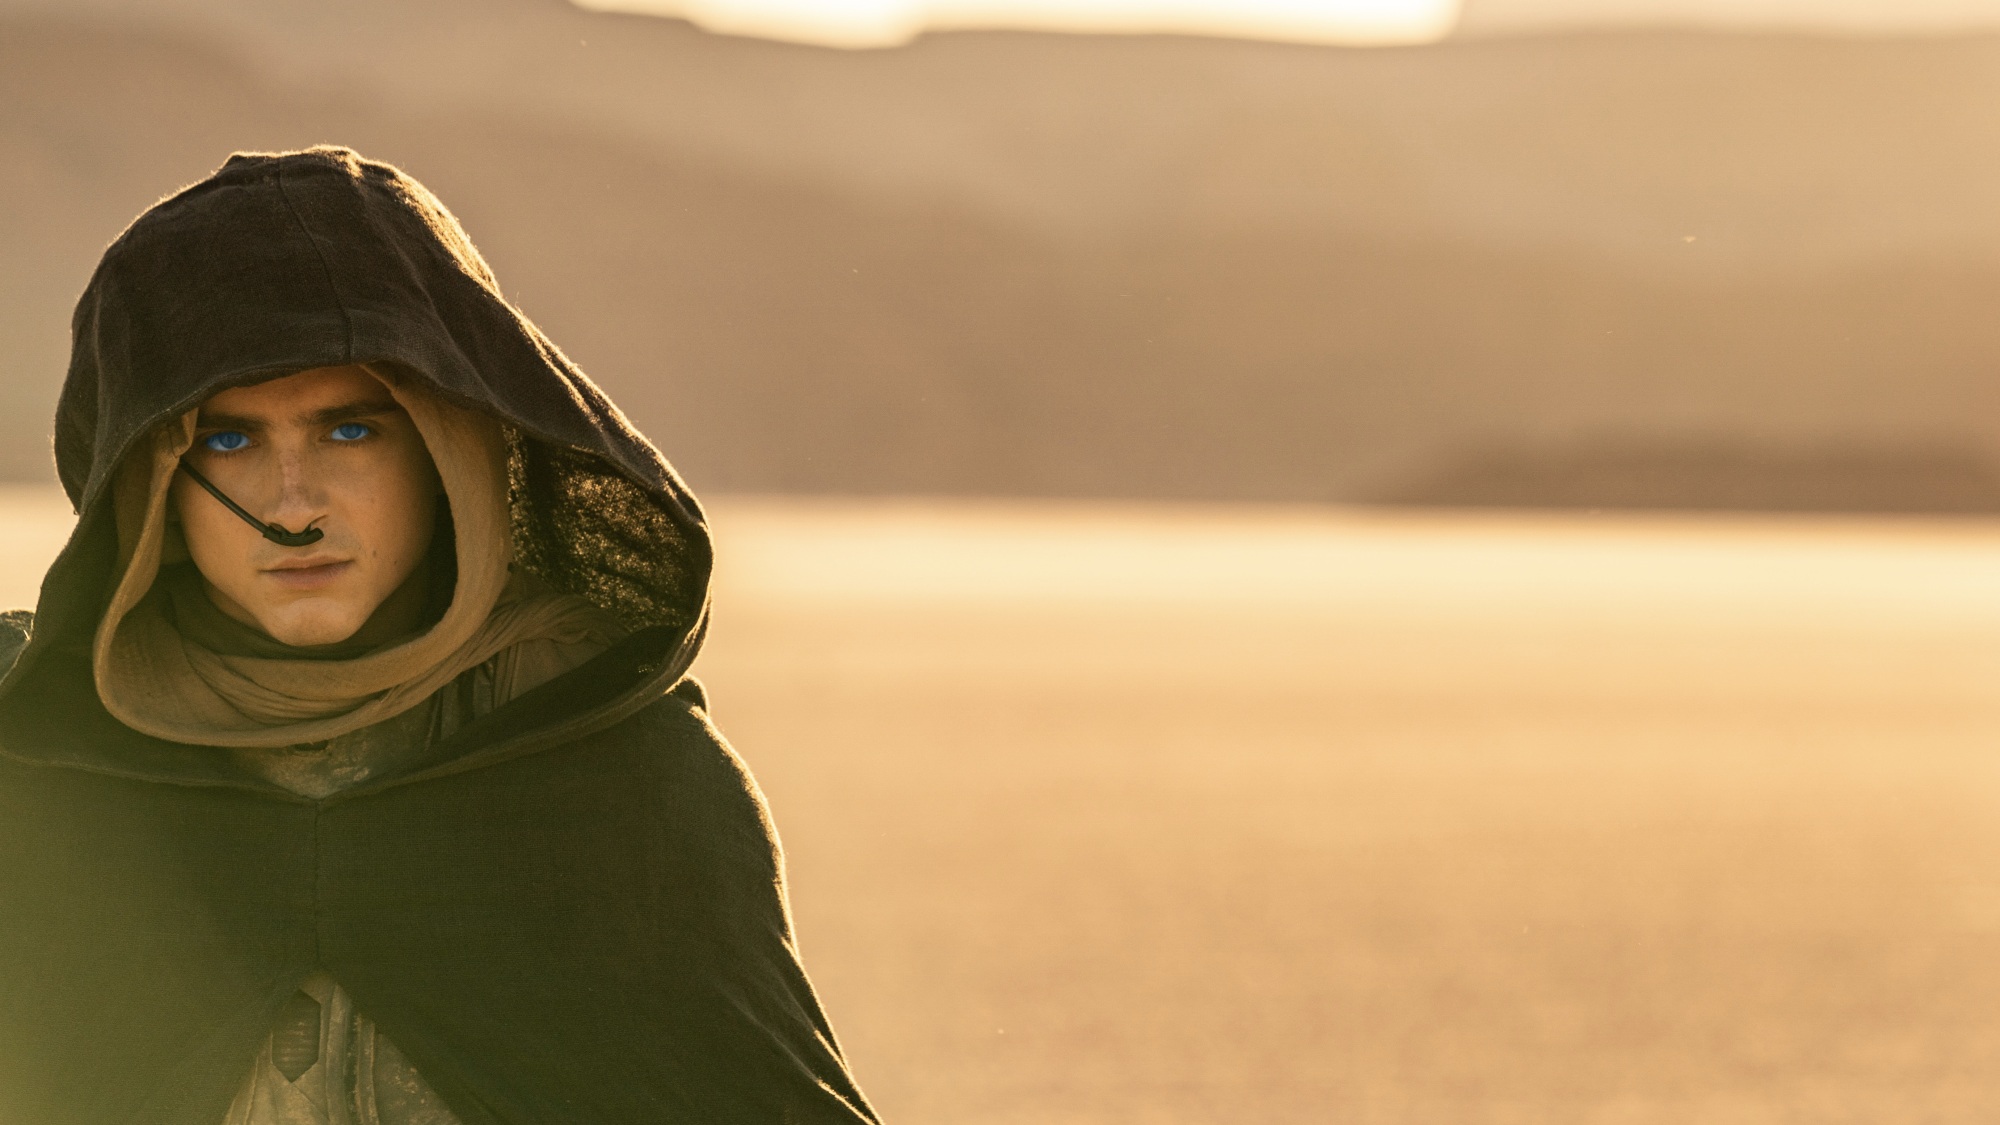 Un jeune homme aux yeux bleu vif marche dans le désert vêtu d'une cape sombre à capuche.